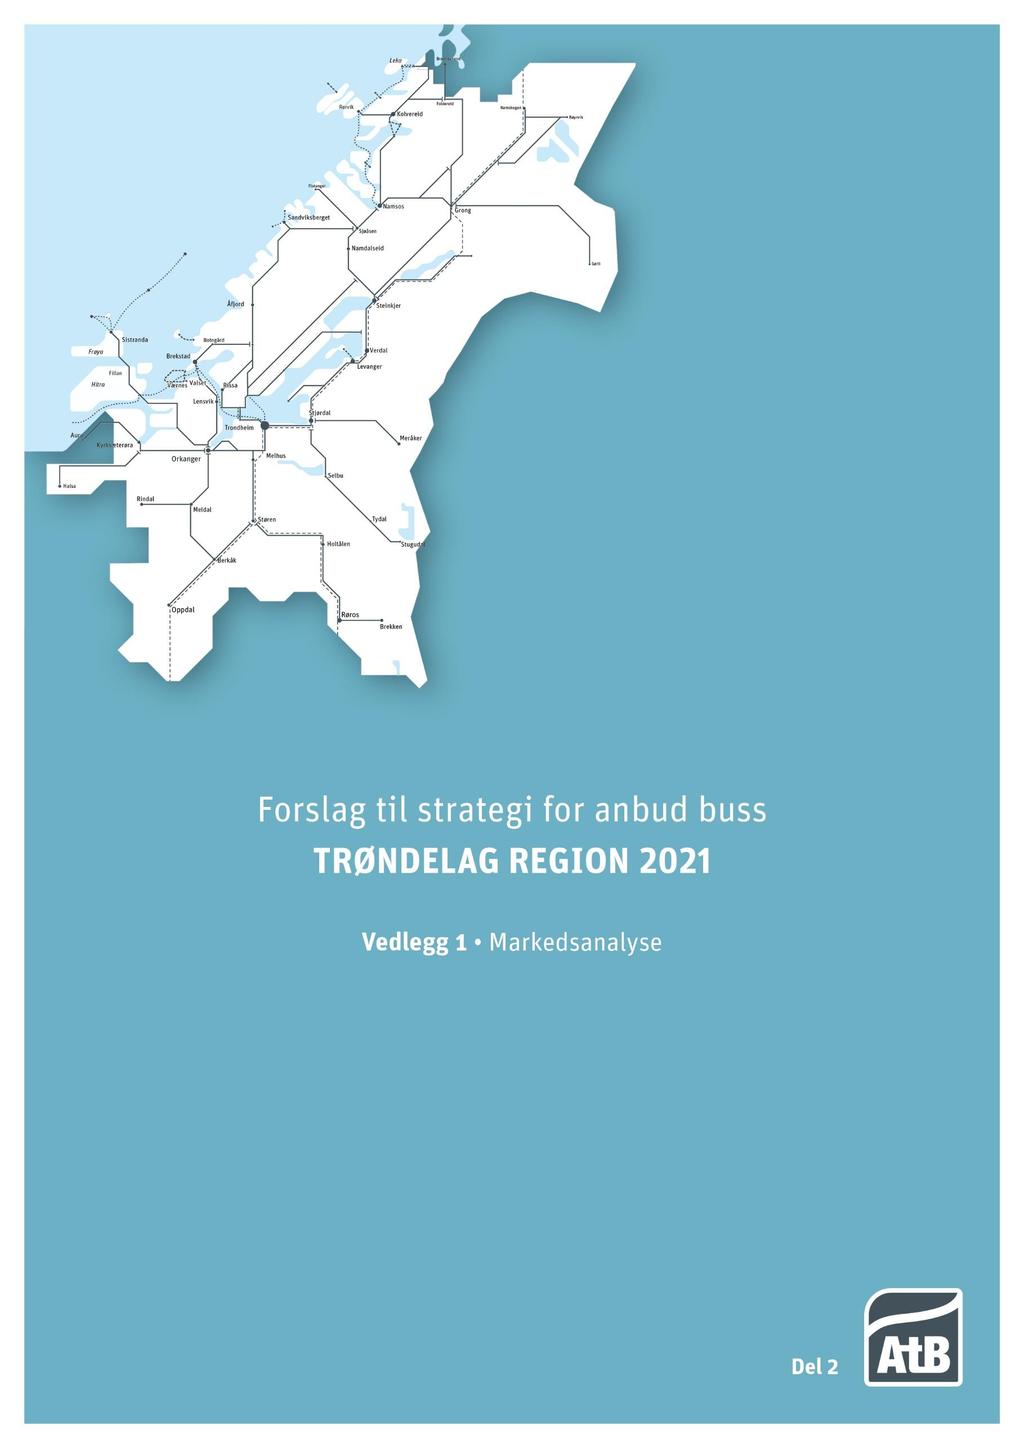 Vedlegg 1: Forslag til strategi for Anbud buss Trøndelag region 2021 (Regionanbud 2021) Vedlegg 1